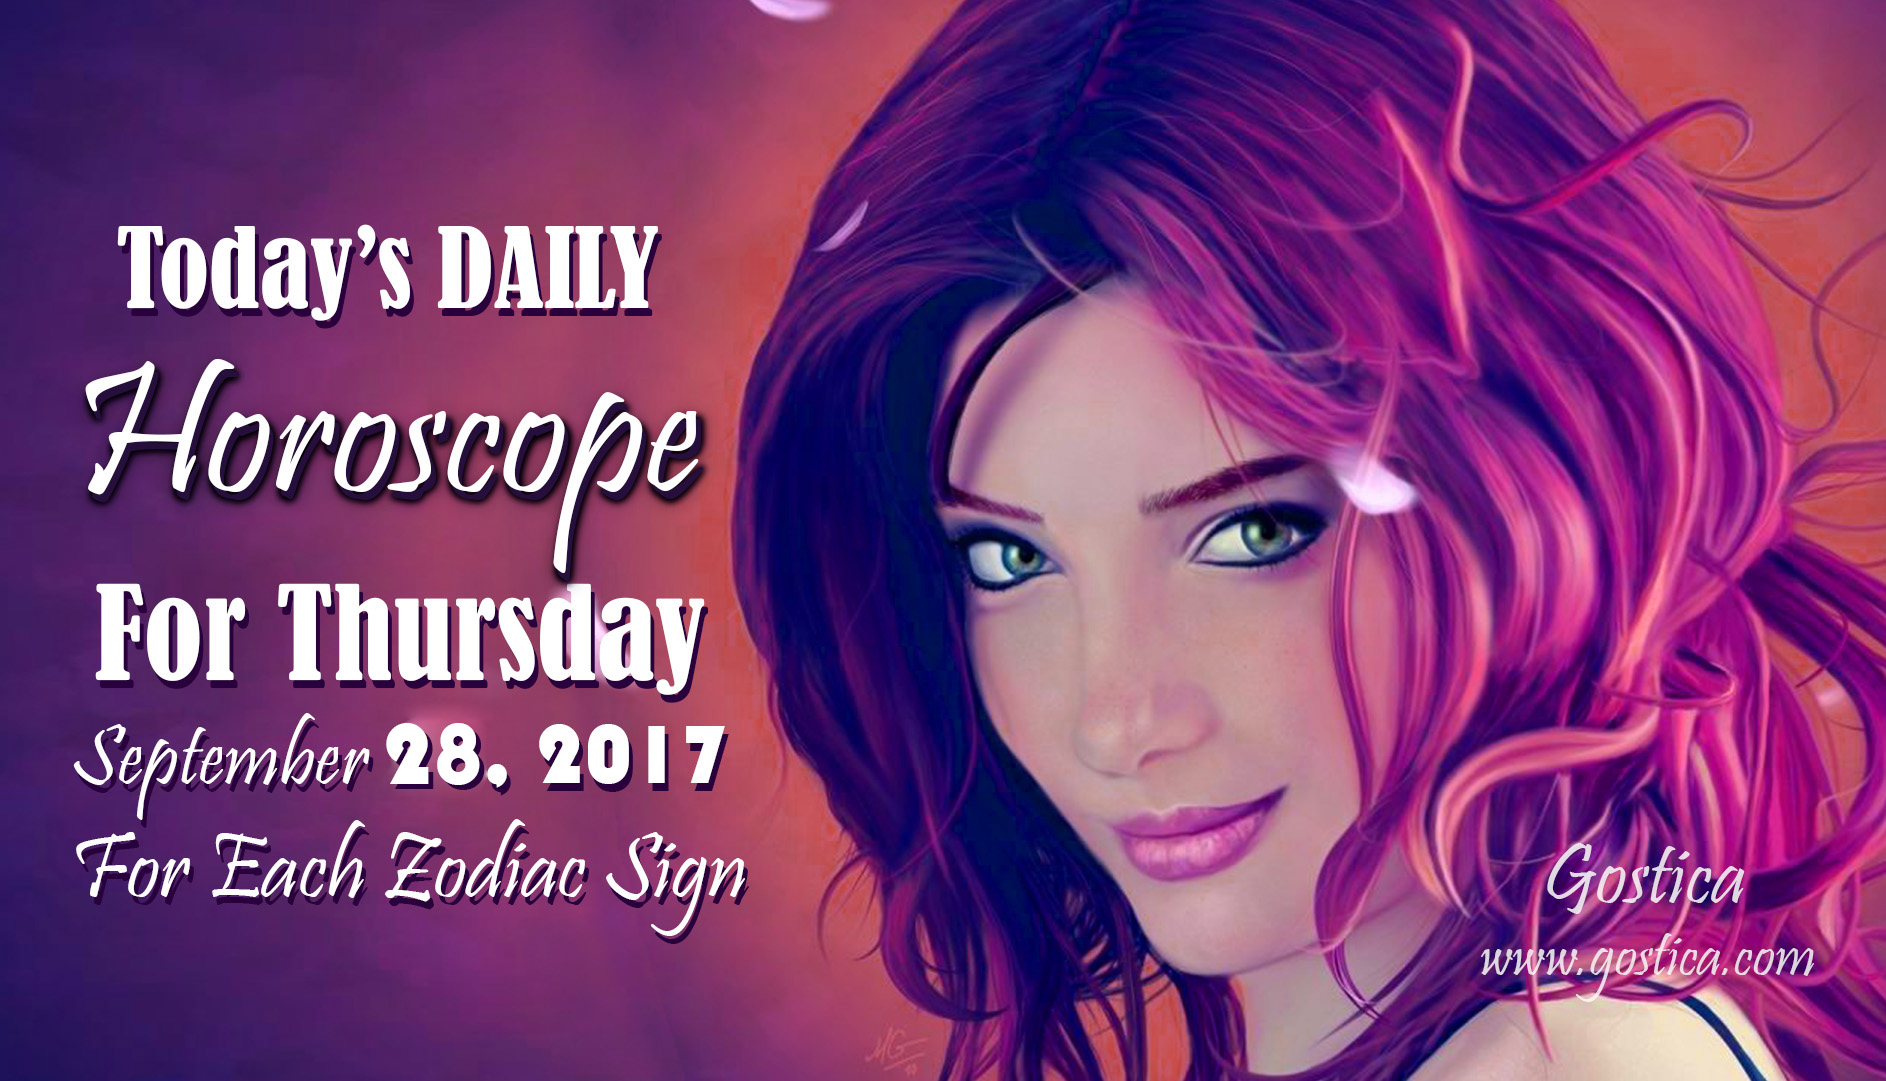 Daily-Horoscope-thursday-1.jpg